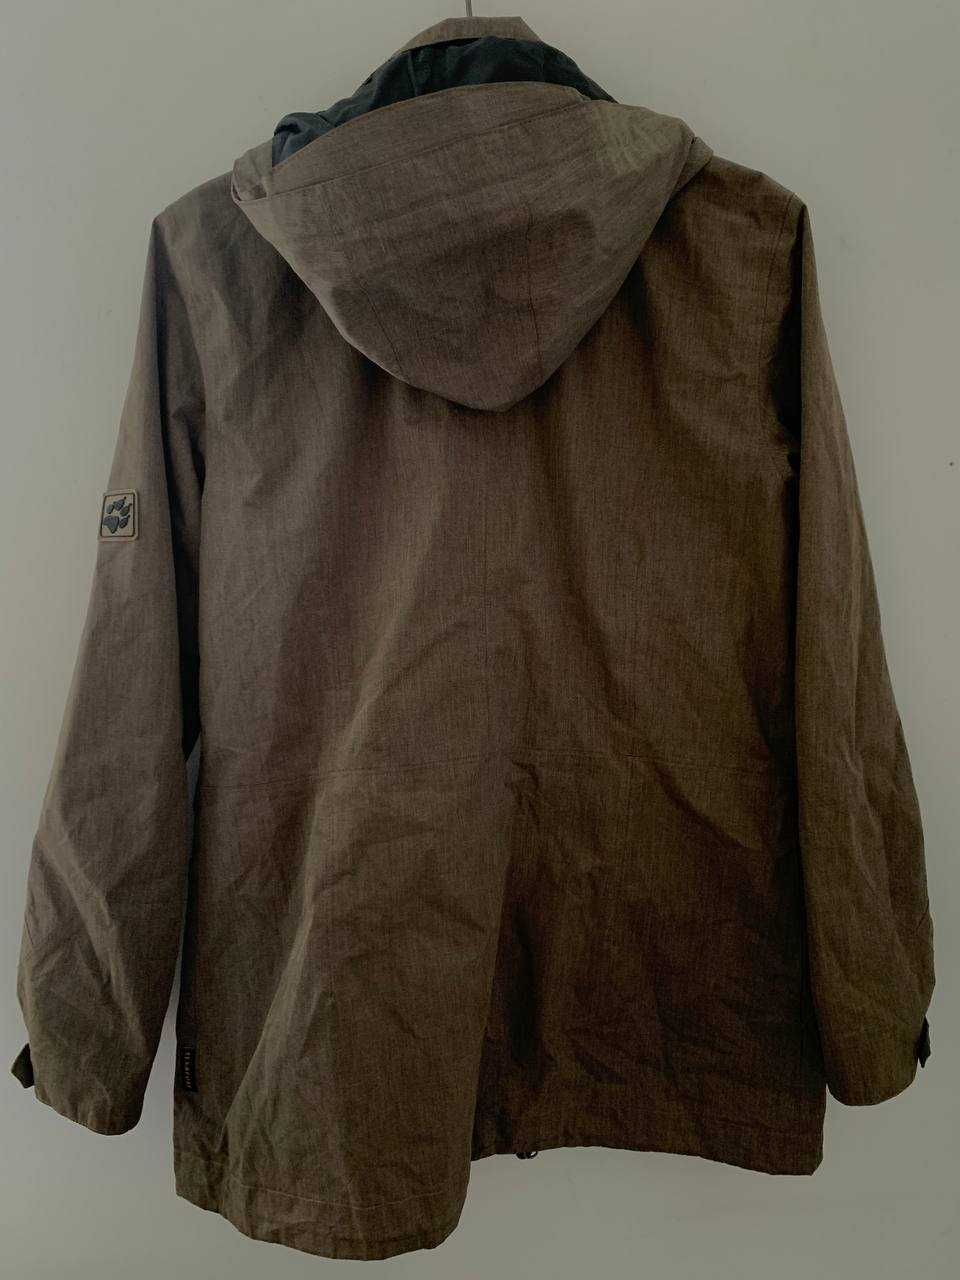 Jack wolfskin куртка вітровка texapore чоловіча коричнева  розмір м